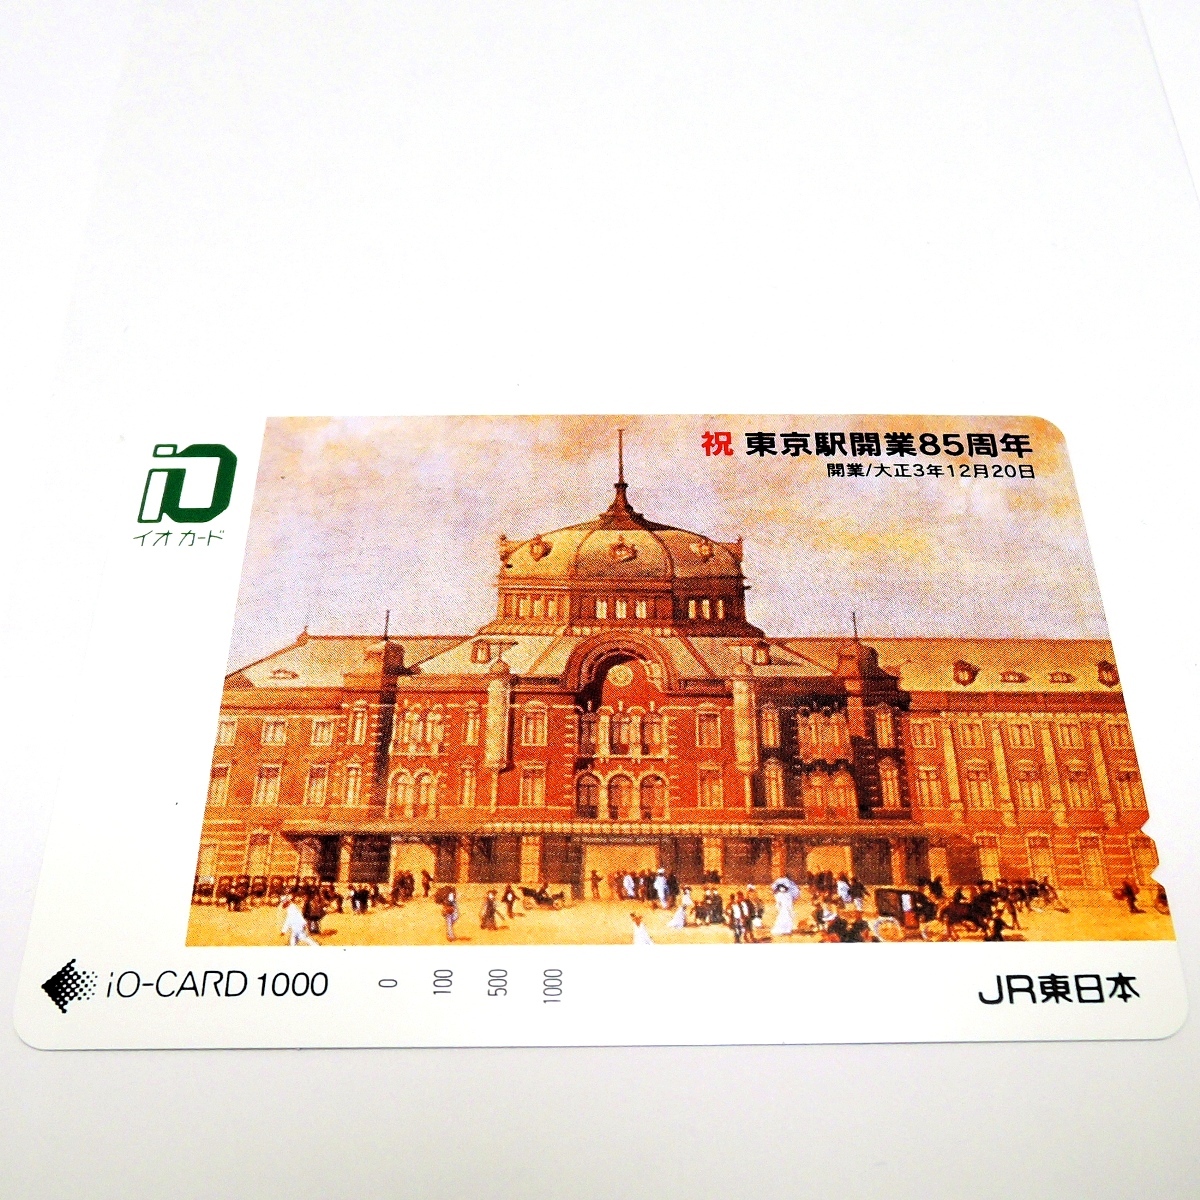 * высшее редкостный товар * не использовался товар *JR Восточная Япония * iO-CARD/ io-card * Tokyo станция открытие 85 годовщина * номинальная стоимость 1000 иен * коллекция *